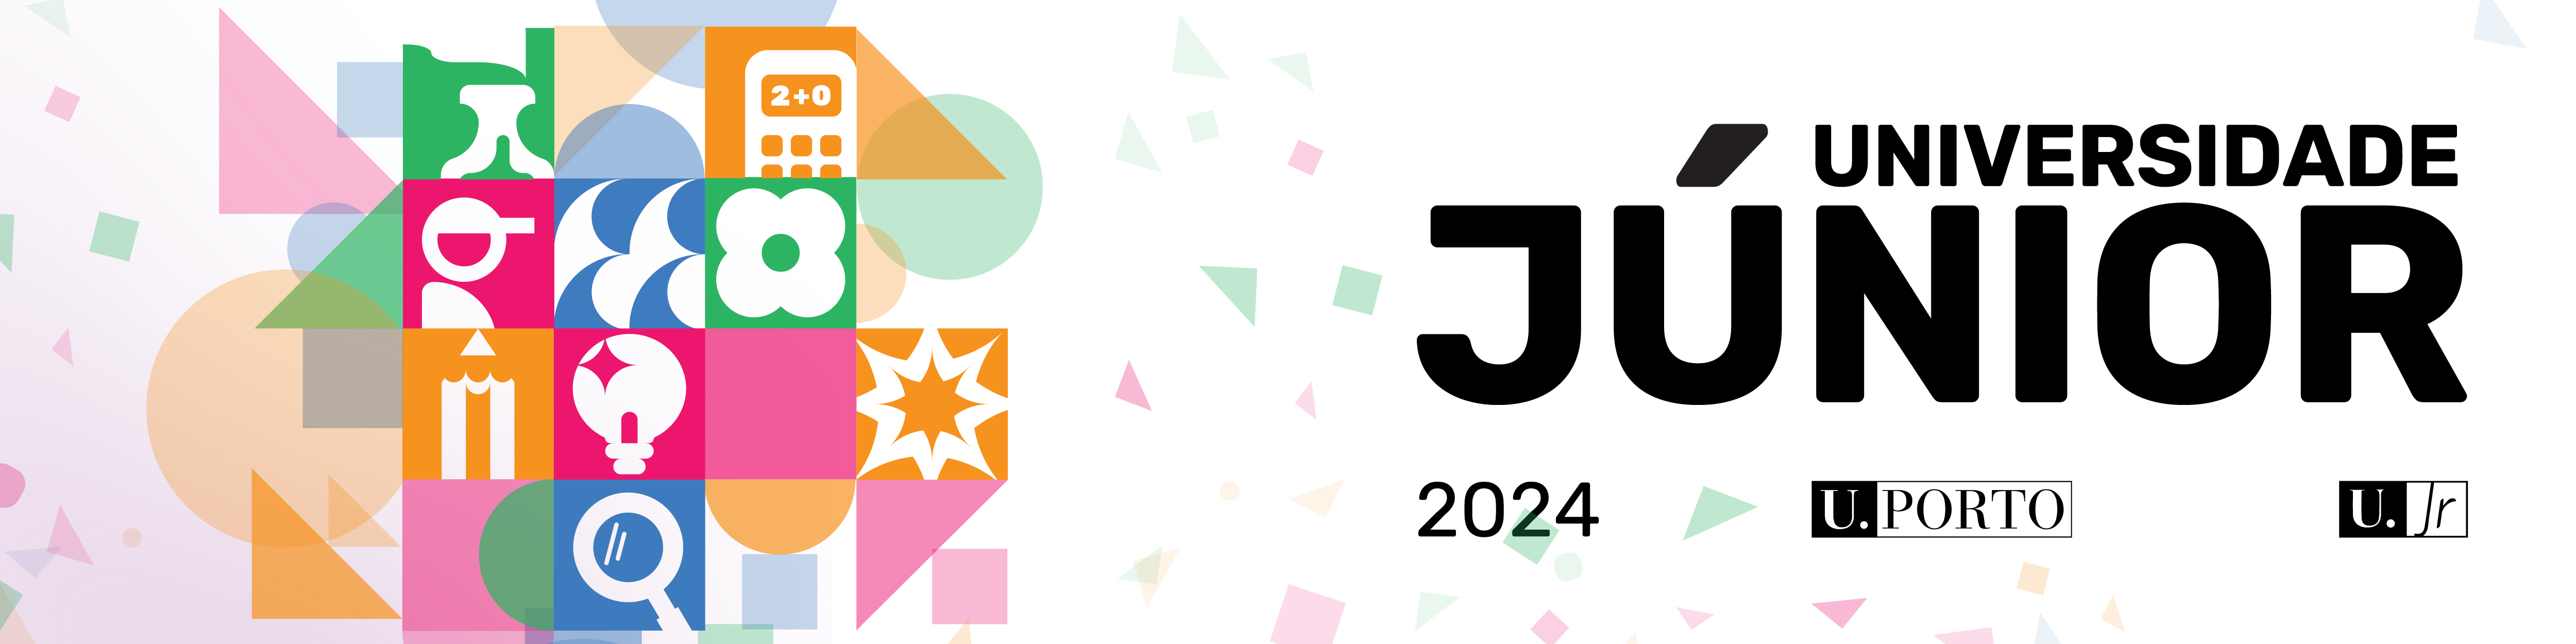 Universidade Jnior 2024